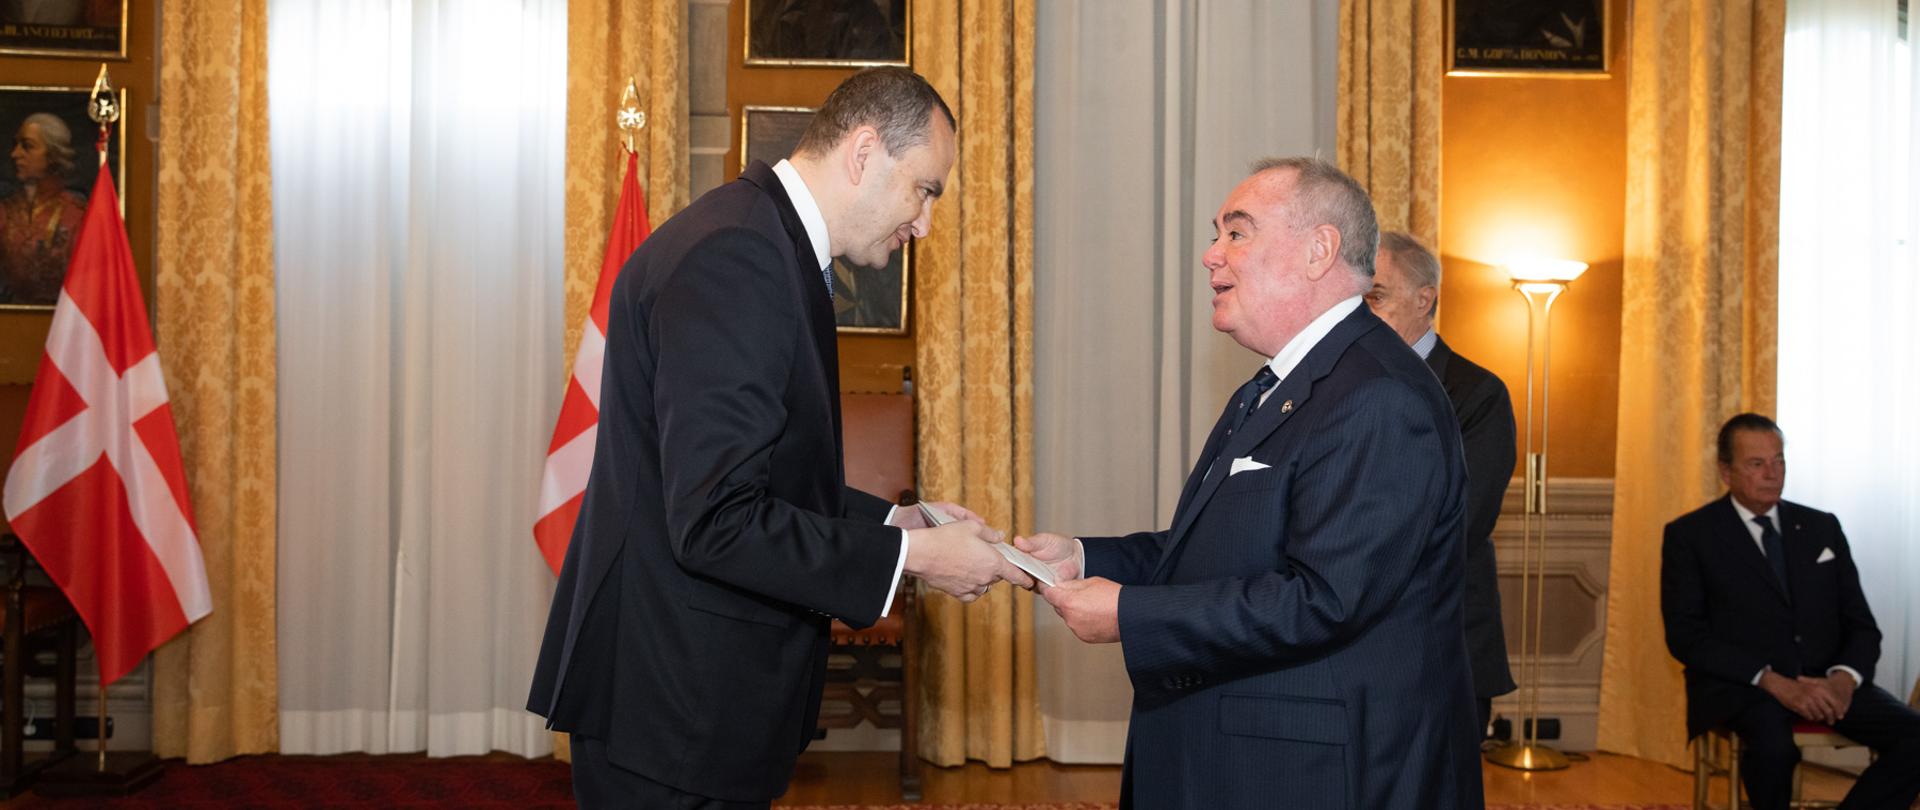 PHOTOS: Order of Malta 